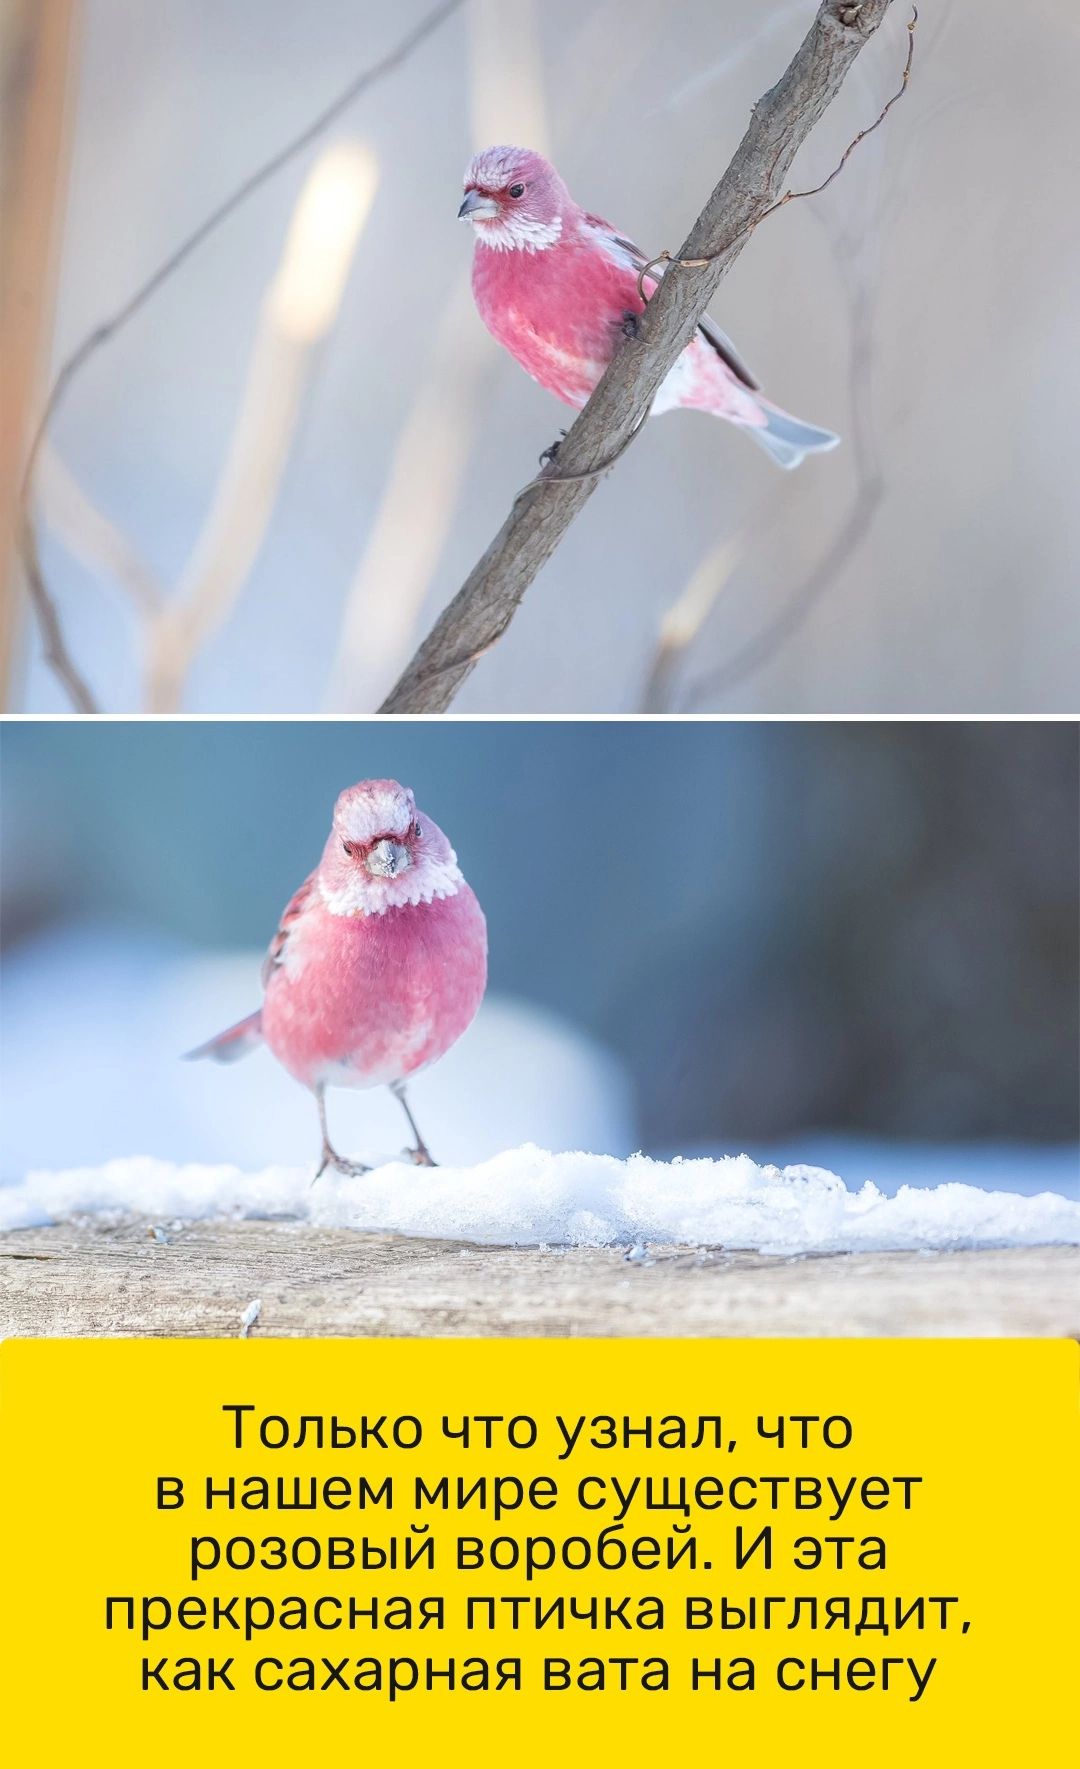 ТОЛЬКО ЧТО узнал ЧТО в нашем мире существует розовый воробей И эта прекрасная птичка выглядит как сахарная БЭТЗ на снегу